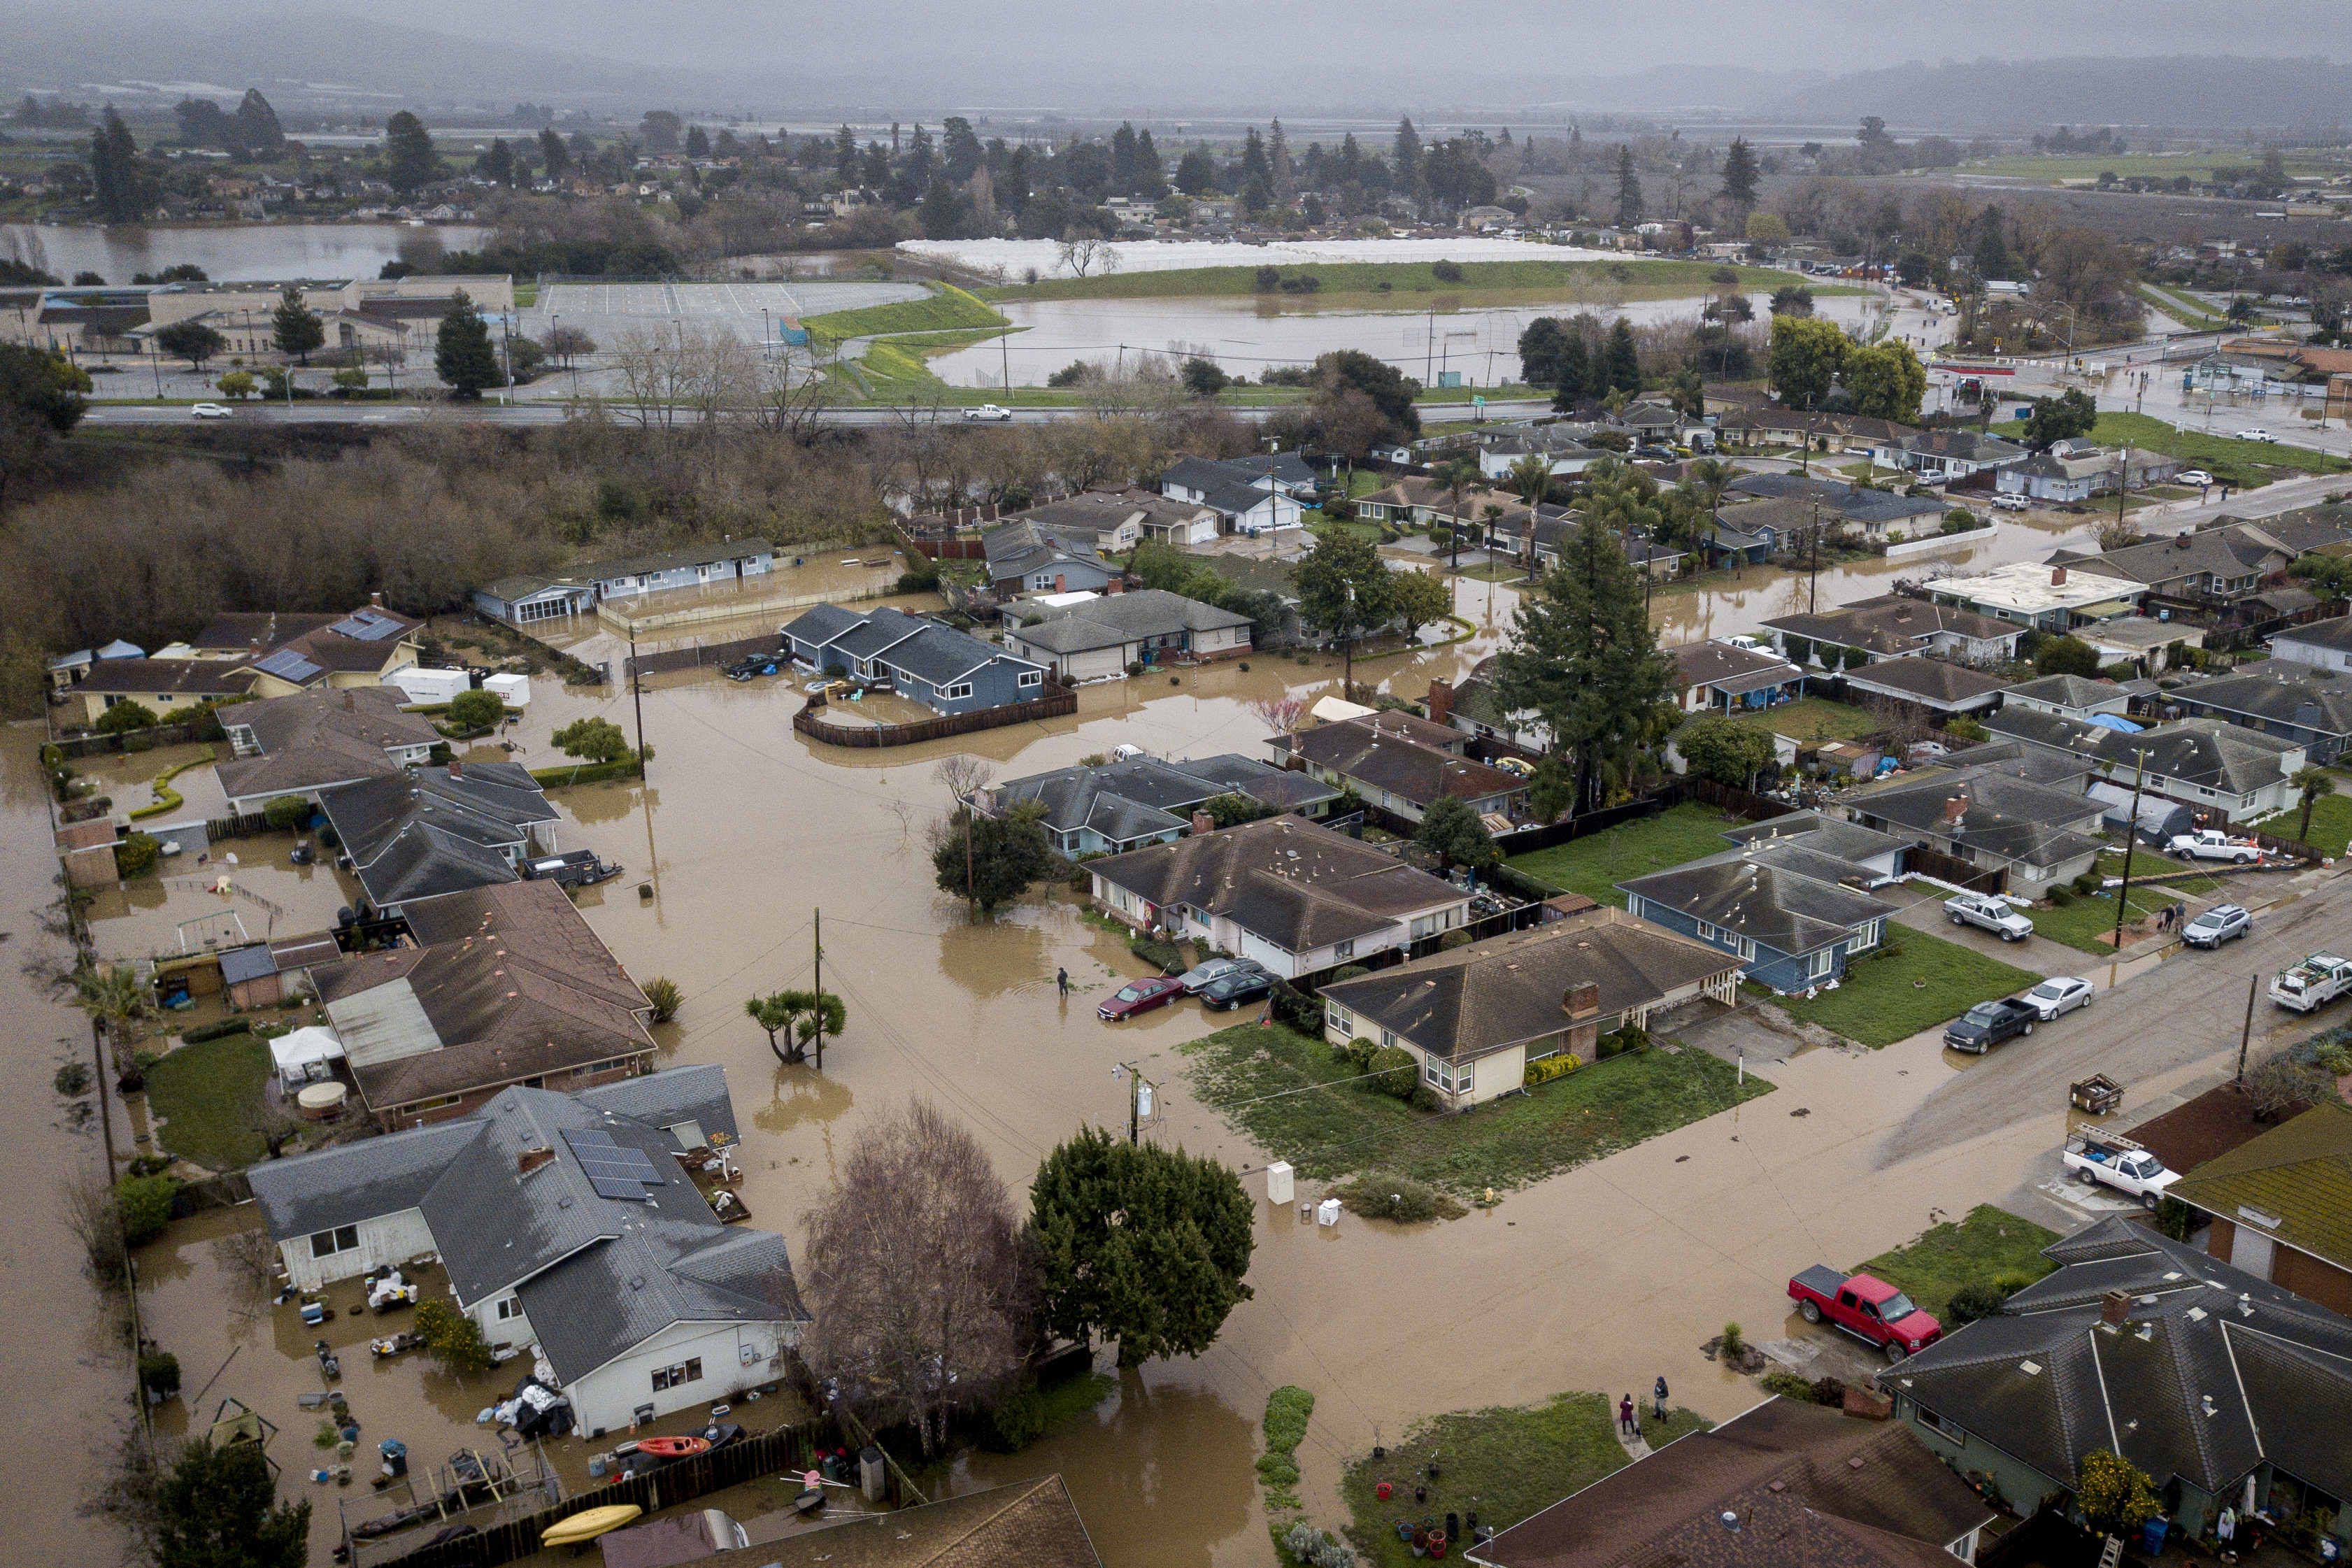 El número de muertos aumenta a 14 en las inundaciones de California después de que la caída de los árboles mata